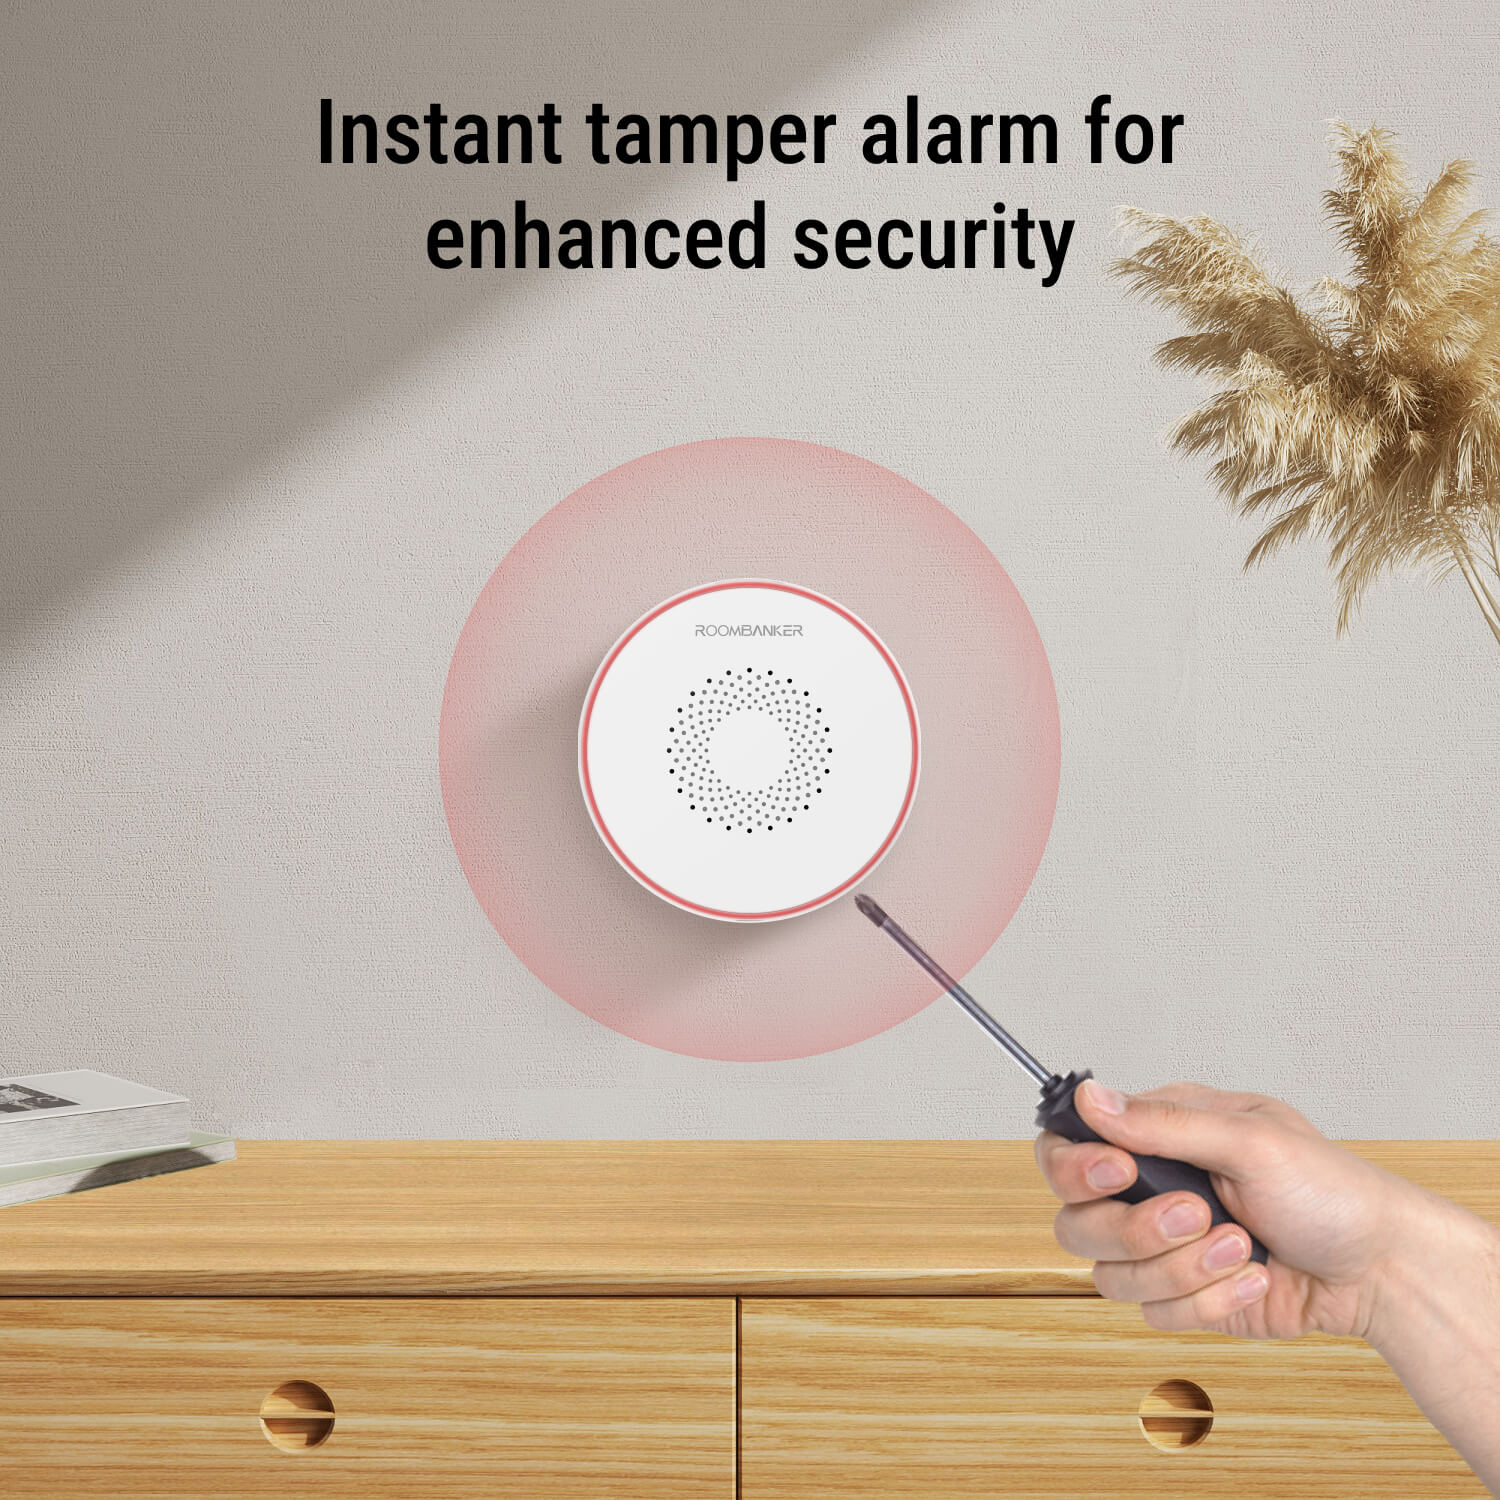 Indoor Siren - Adjustable Volume & Alarm Duration - Requires Roombanker Hub